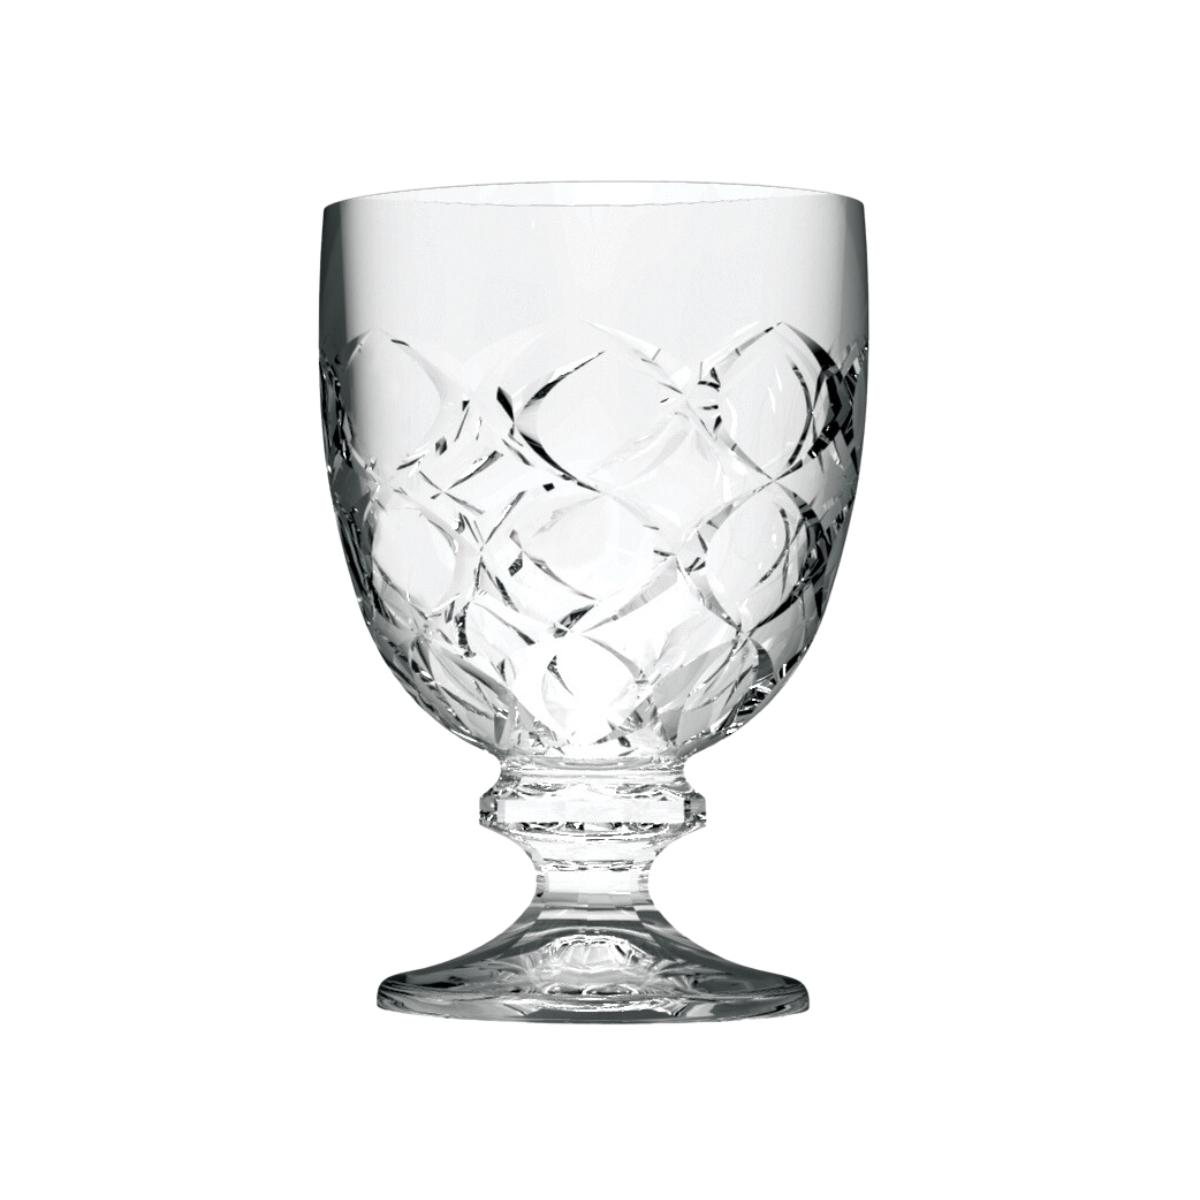 City glass Locarno Stemware 220 ml set of 6 pieces Transparent Glass